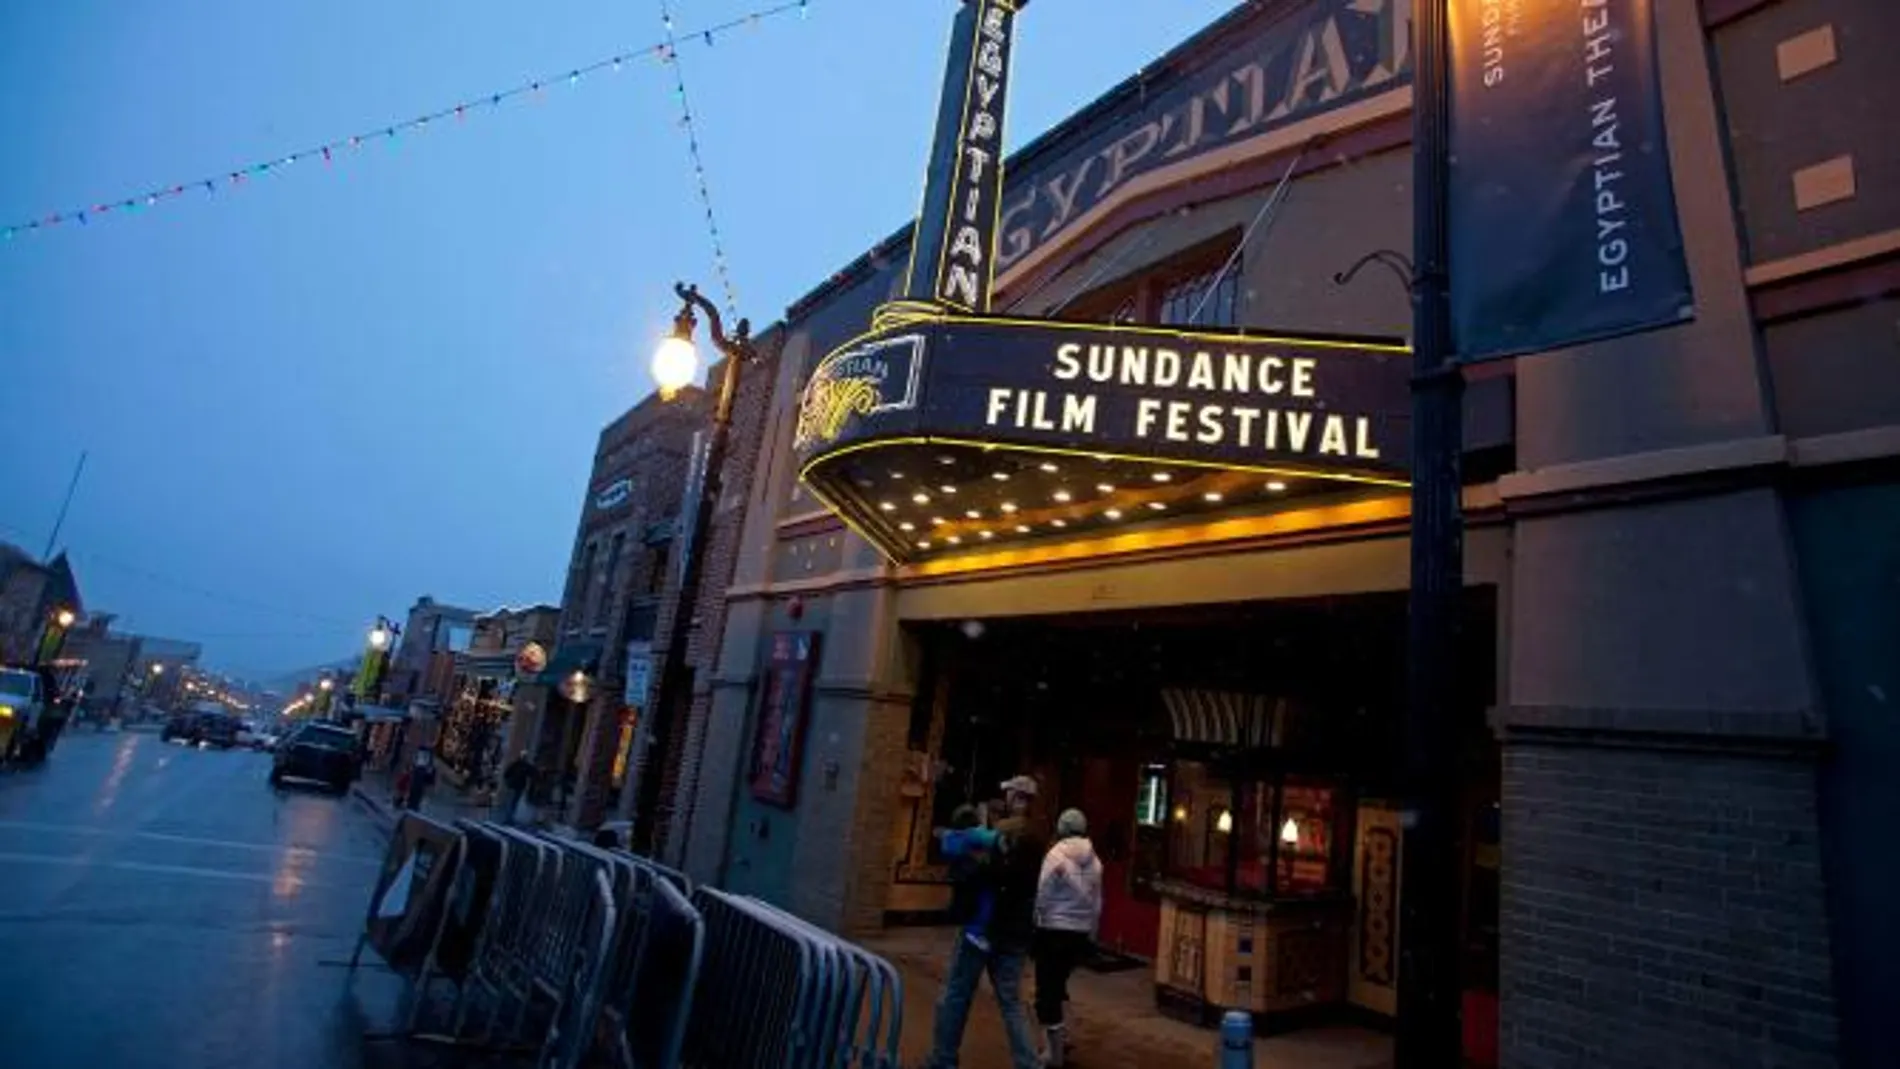 El Festival de Sundance se celebra anualmente en el estado de Utah